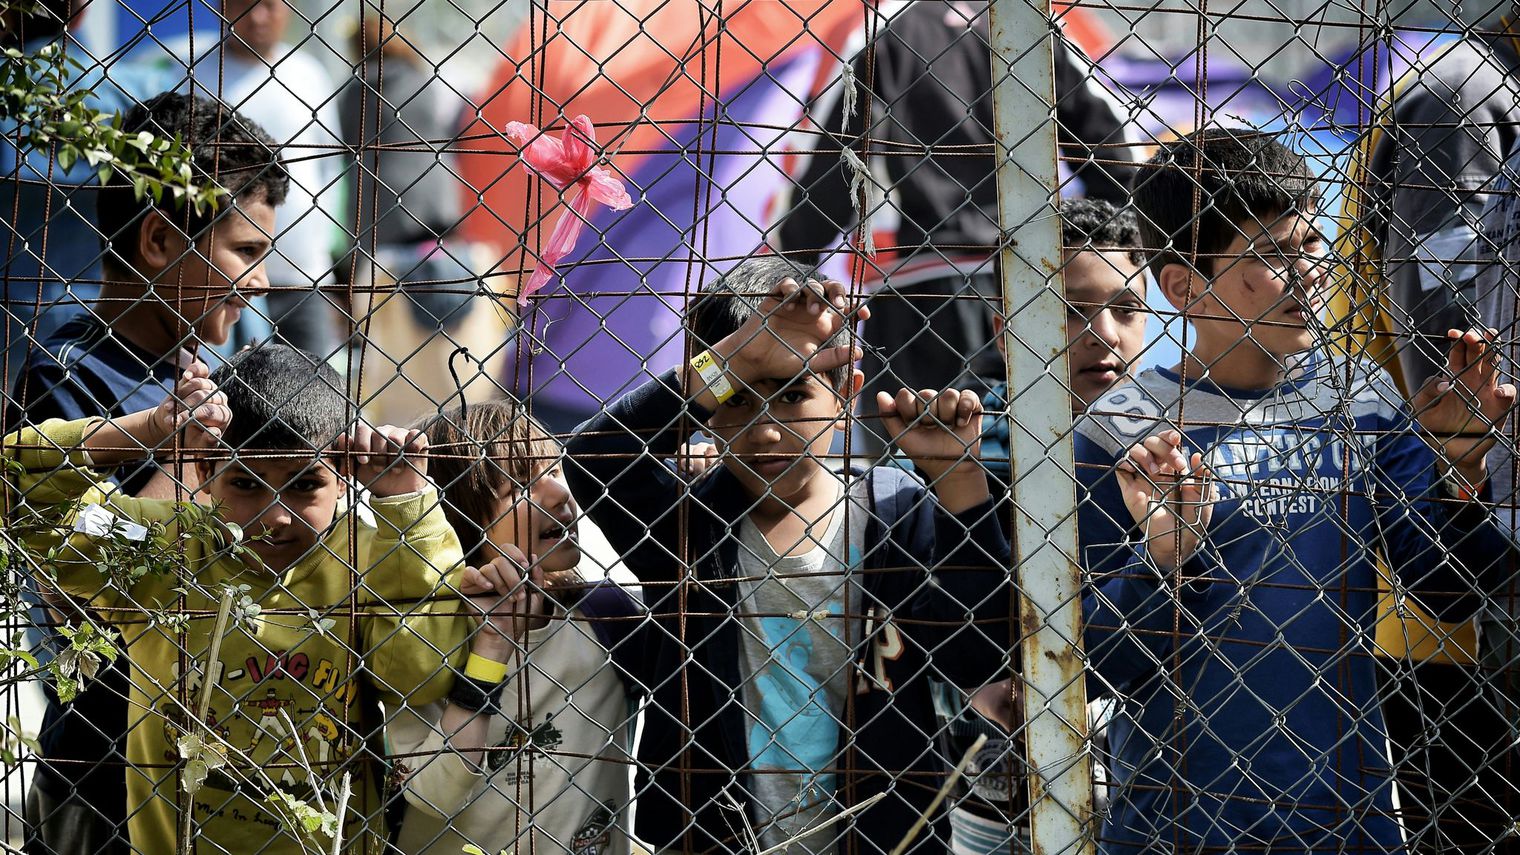 des-enfants-se-tiennent-derriere-le-grillage-entourant-le-camp-de-migrants-de-moria-transforme-en-camp-de-detention-a-mytilene-sur-l-ile-grecque-de-lesbos-le-3-avril-20